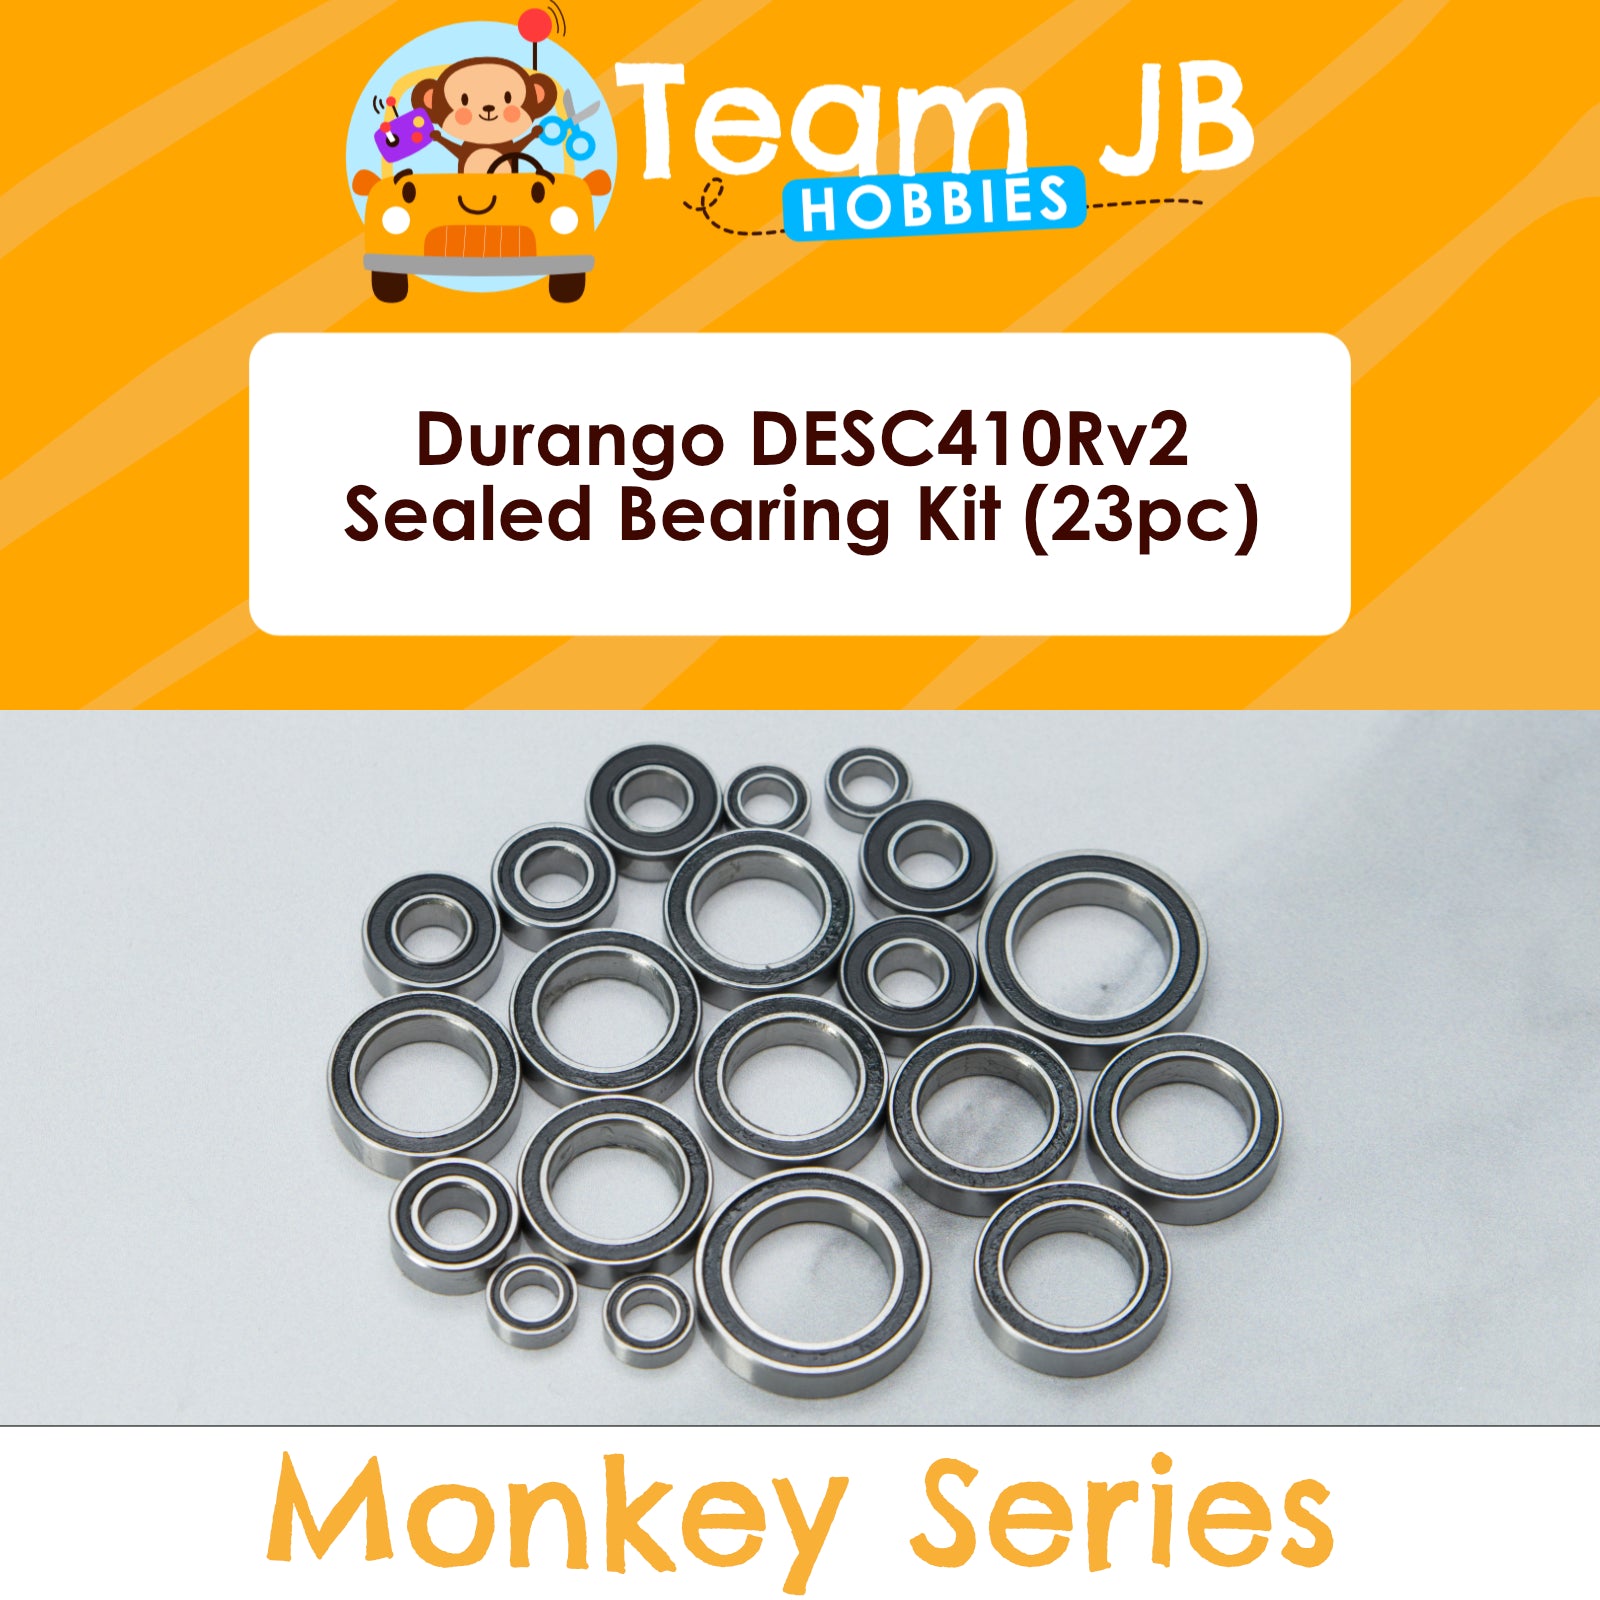 Durango DESC410Rv2 - Sealed Bearing Kit